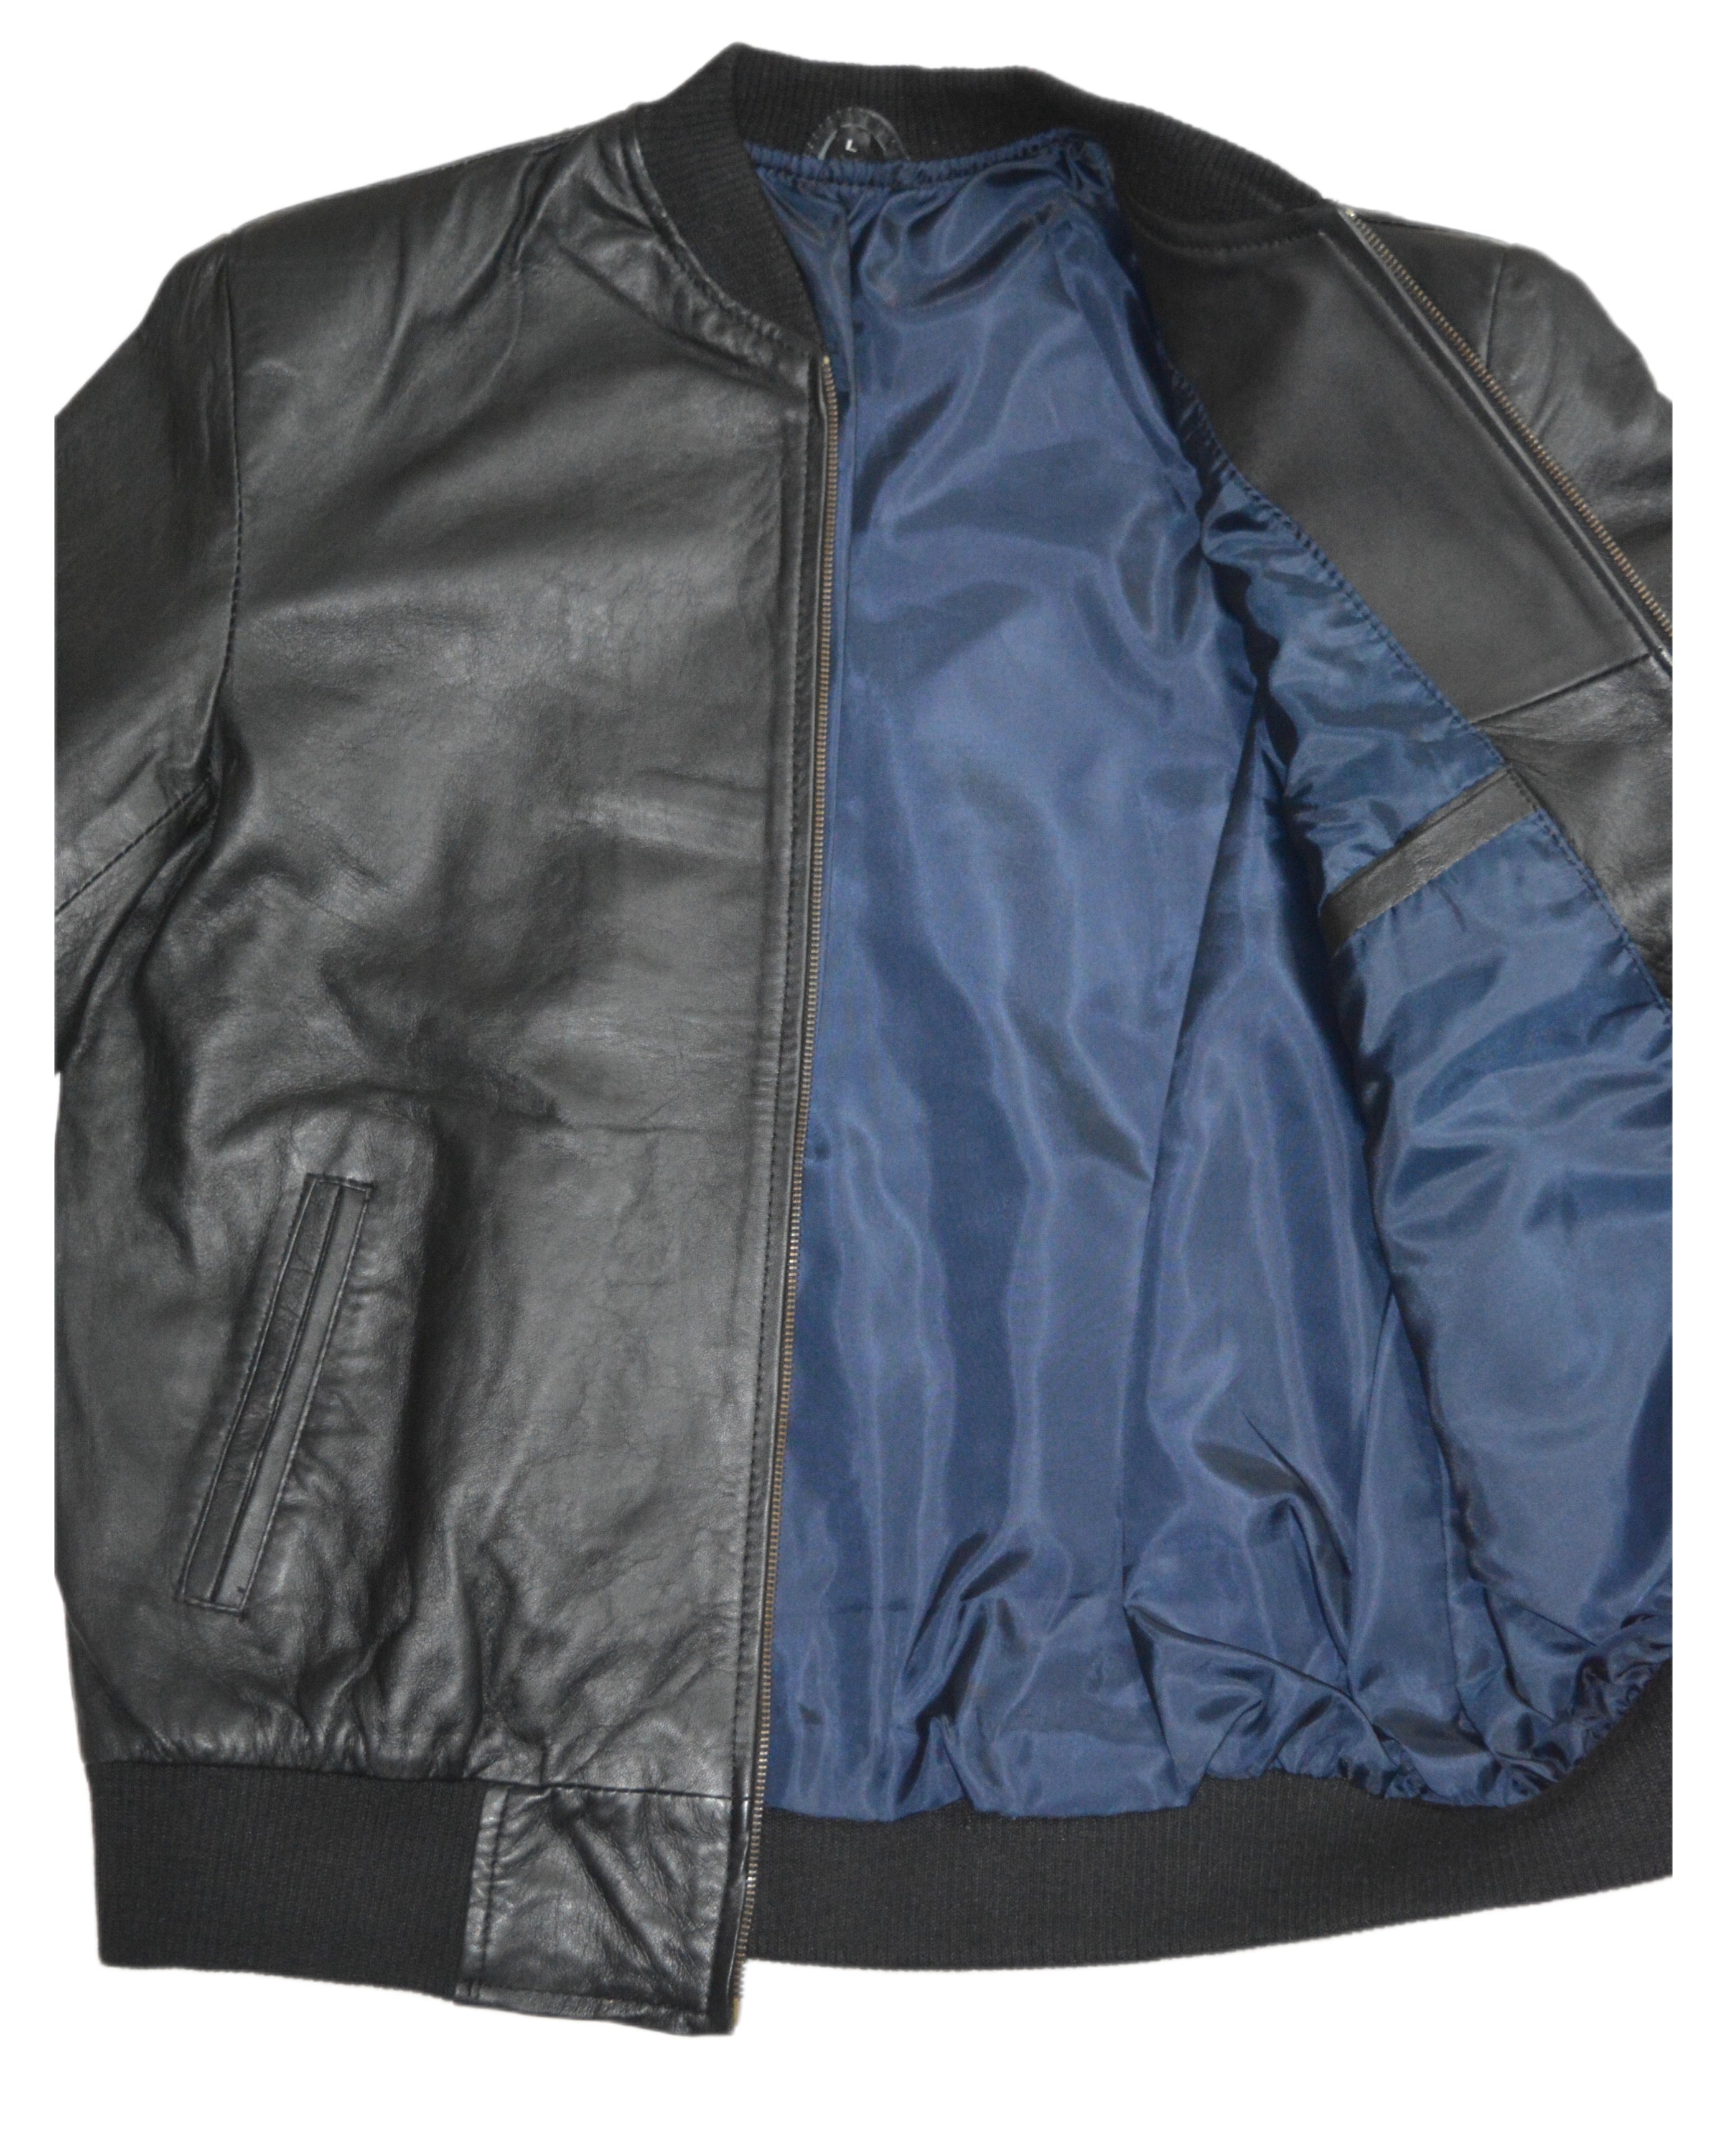 Genuine leather jacket sheep skin – Elar Leather